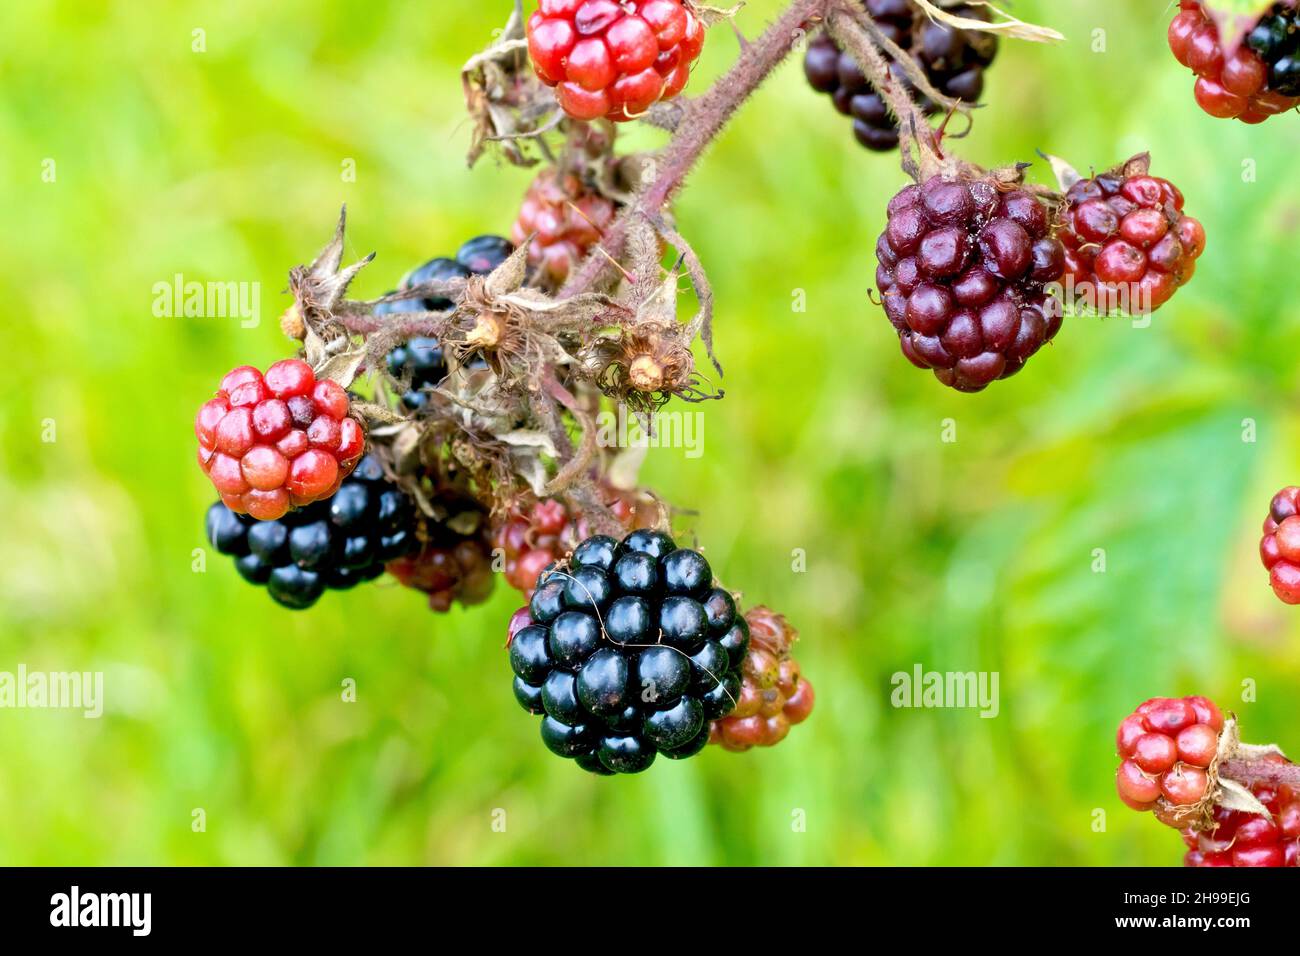 BlackBerry o Bramble (rubus fruticosus), cerca de un grupo de moras maduras e inmaduras o de bollería que todavía cuelgan en la planta. Foto de stock